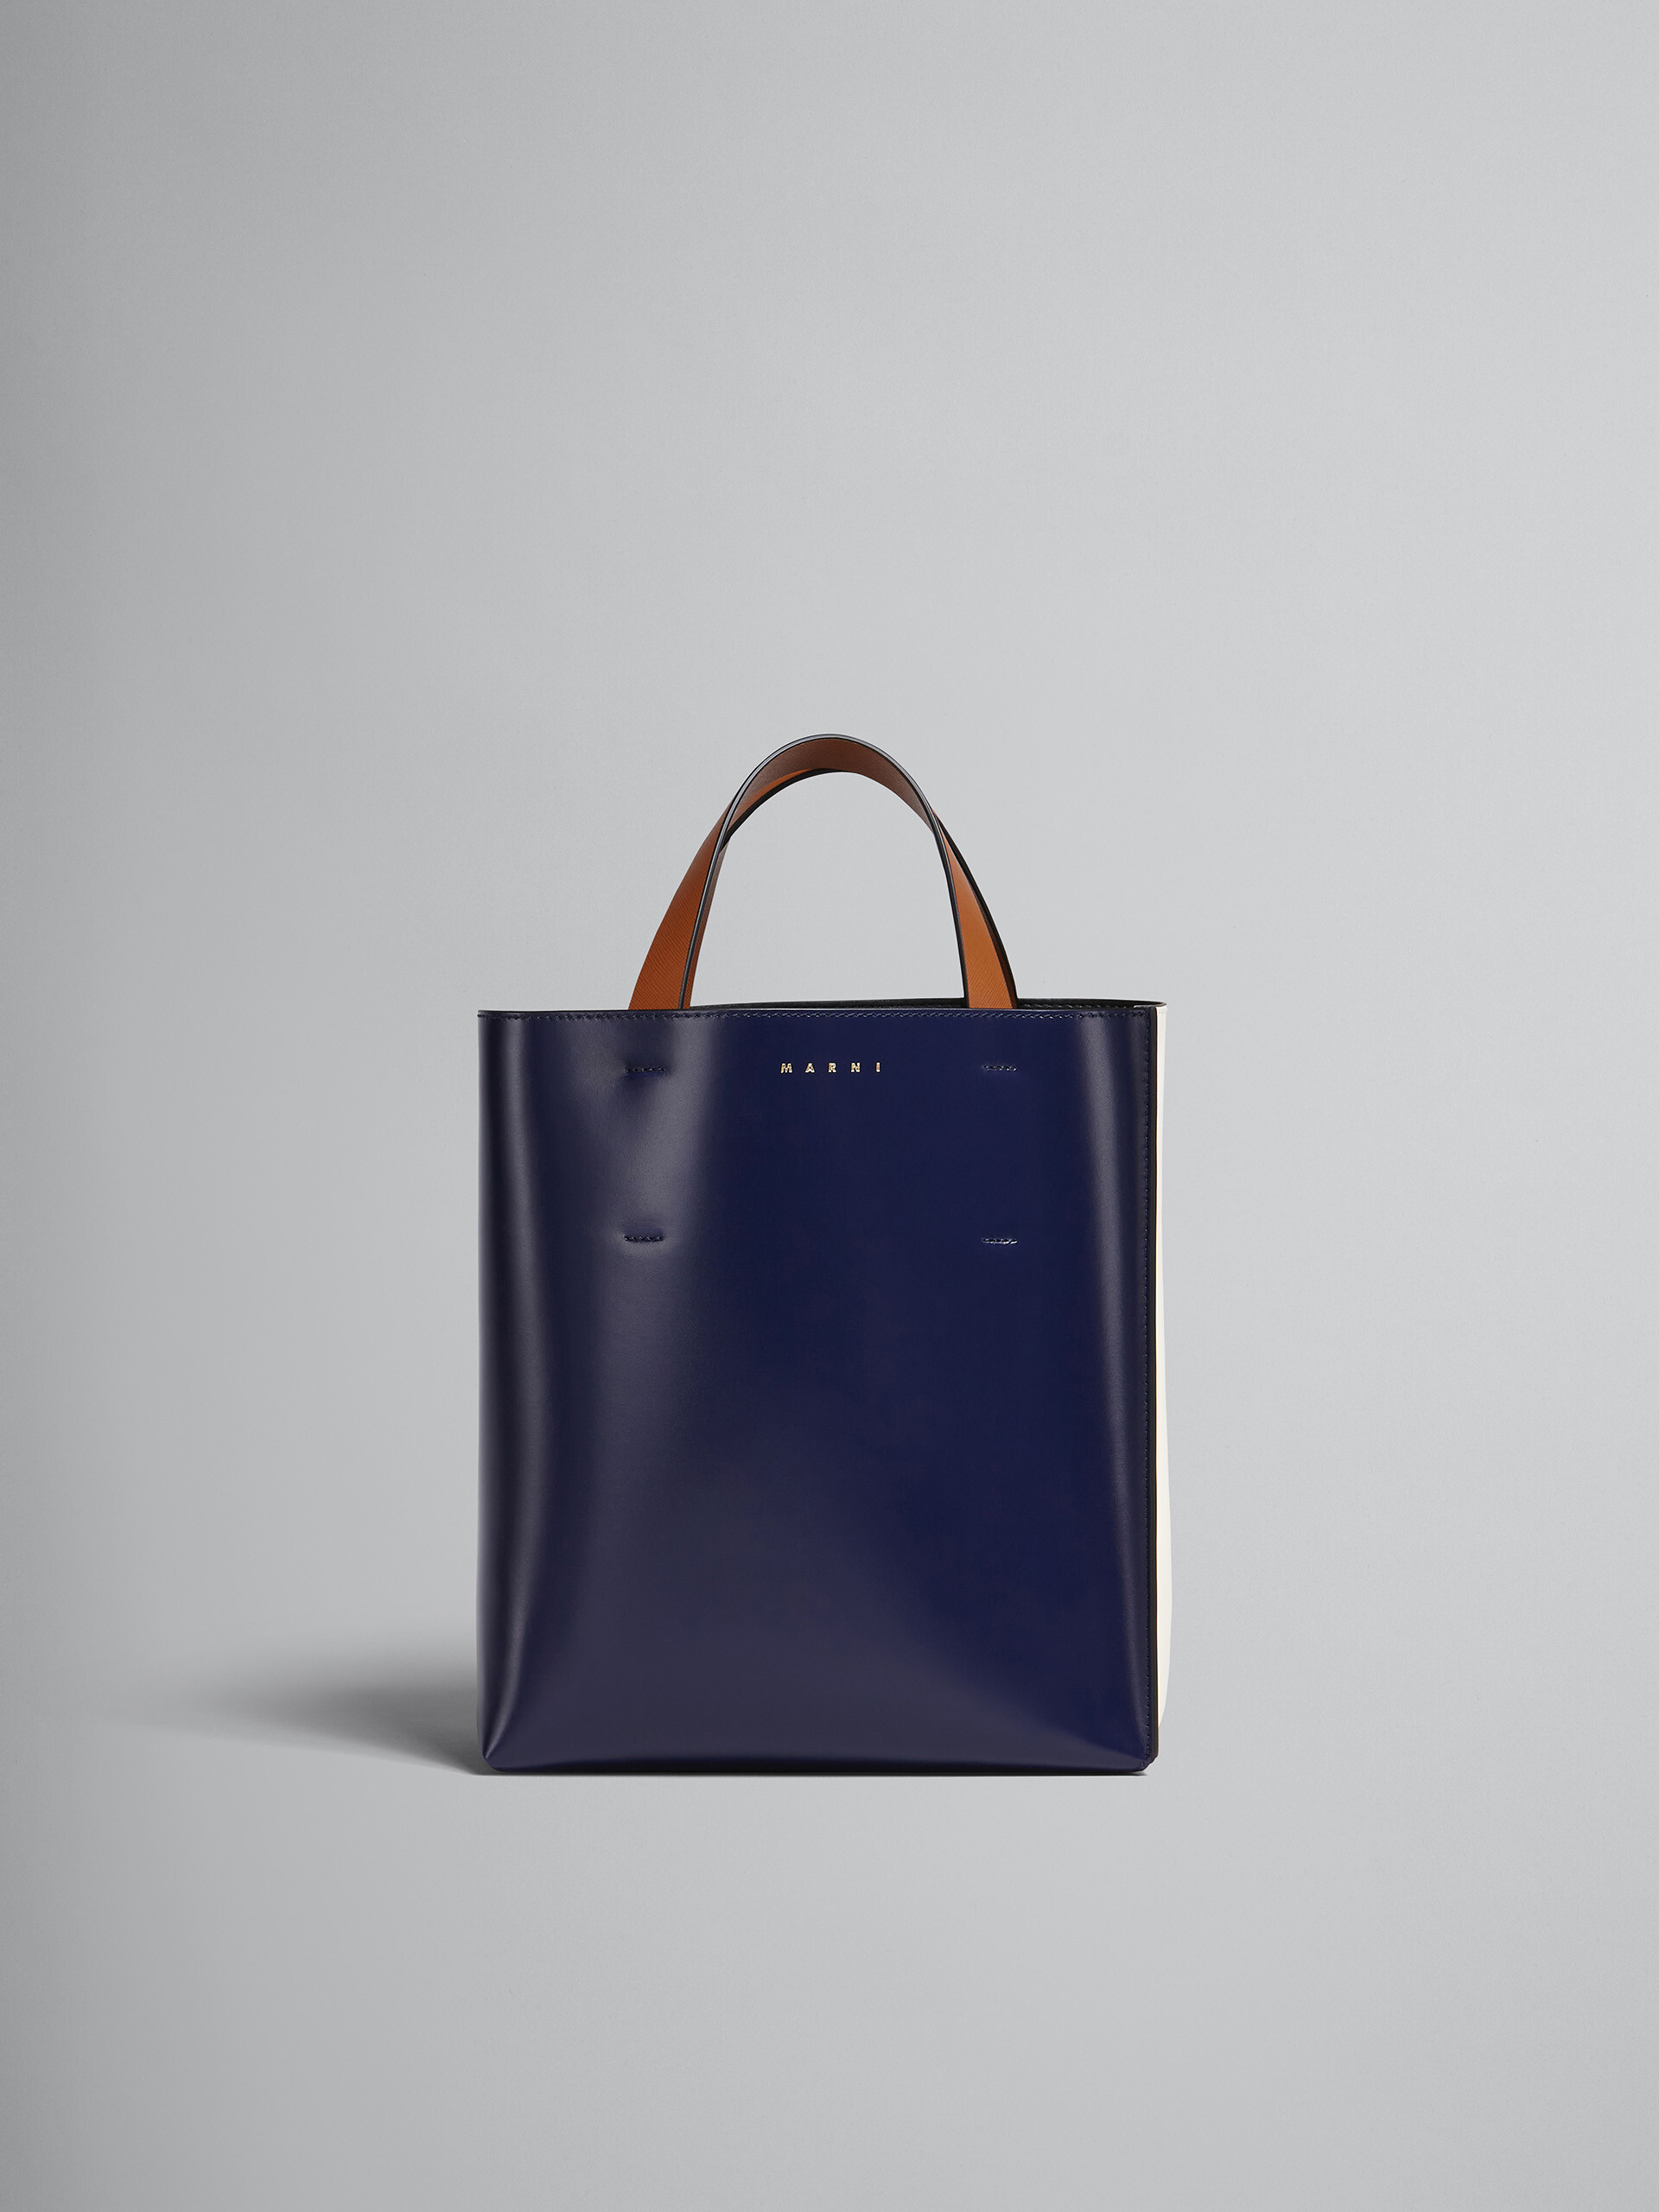 Kleine Tasche MUSEO aus Leder in Blau und Weiß - Shopper - Image 1